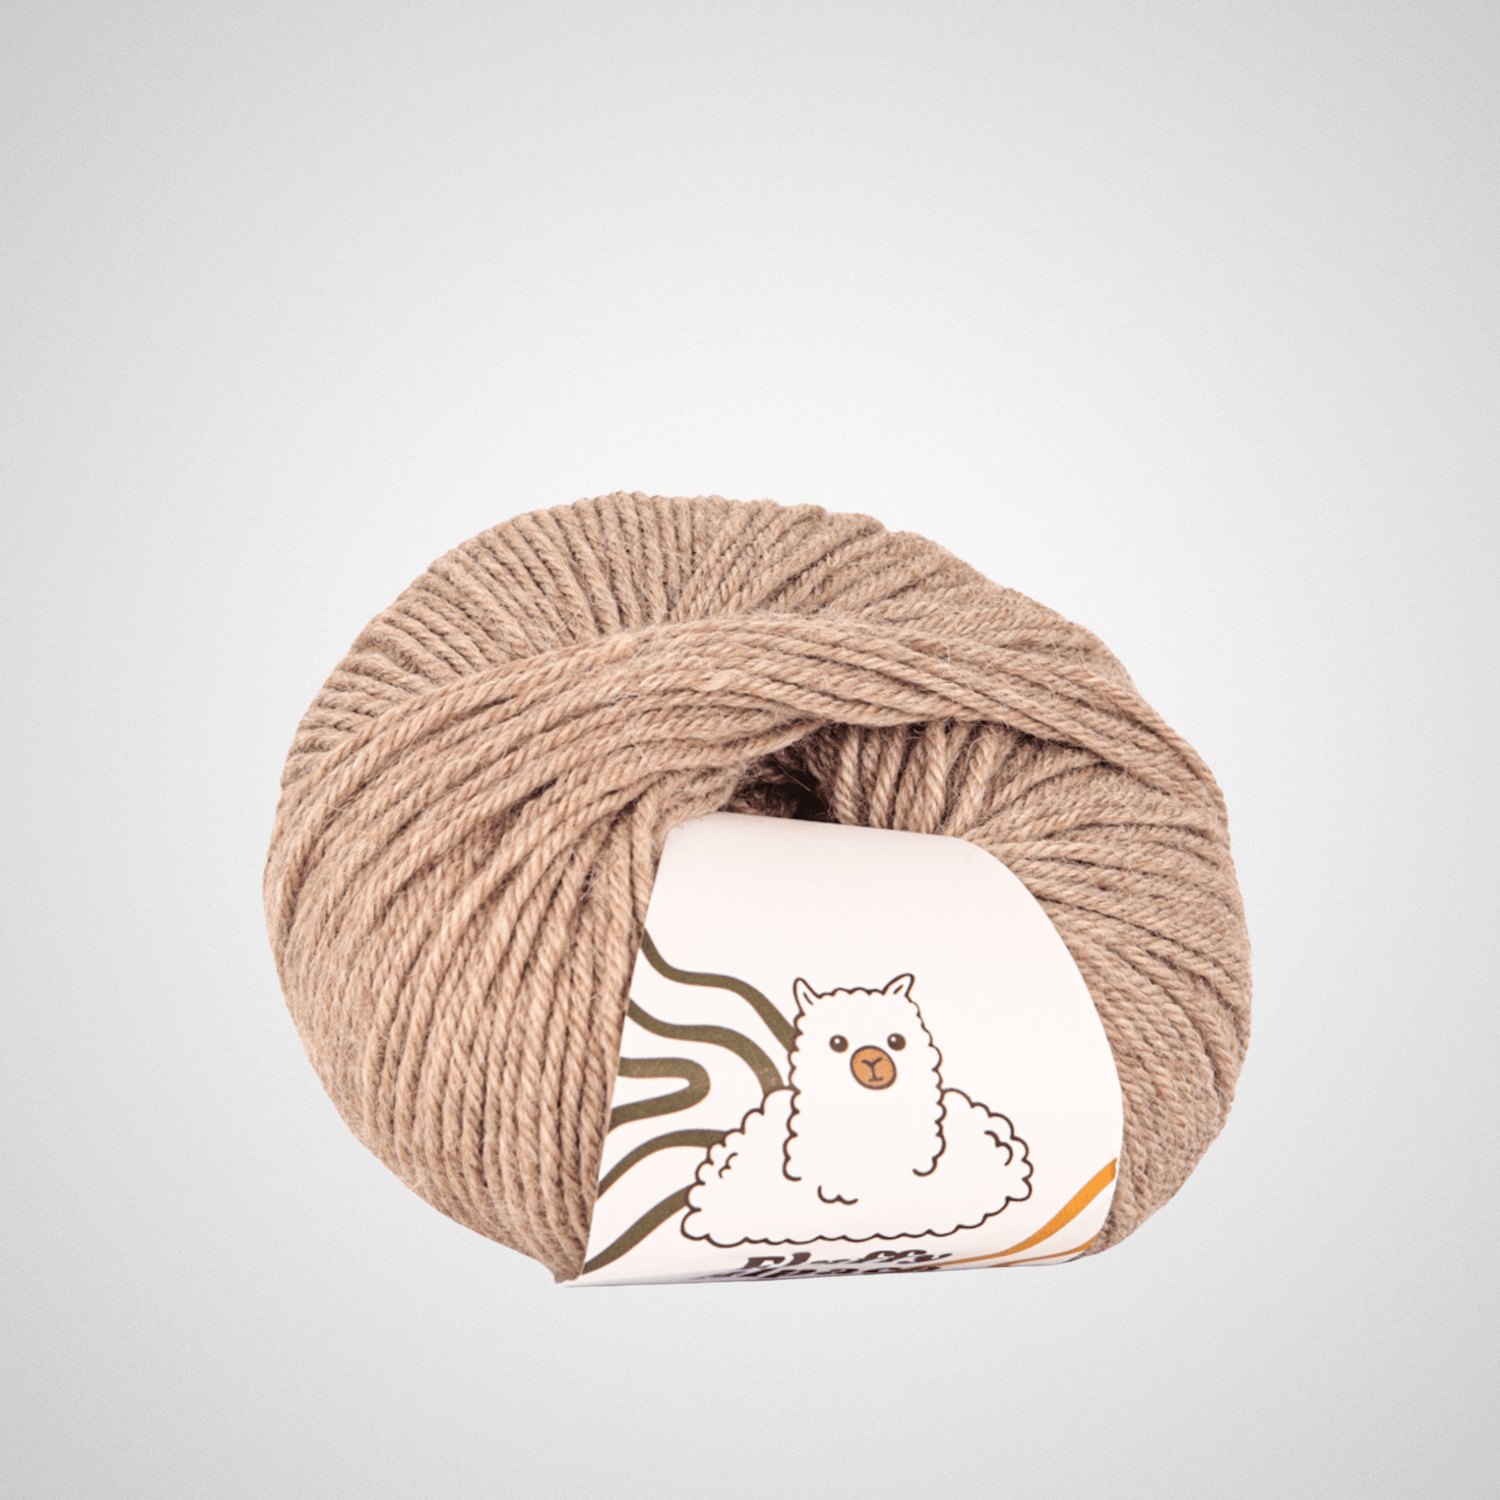 Fluffy Alpaca - Knitting thread - 100% alpaca wool - Country gray